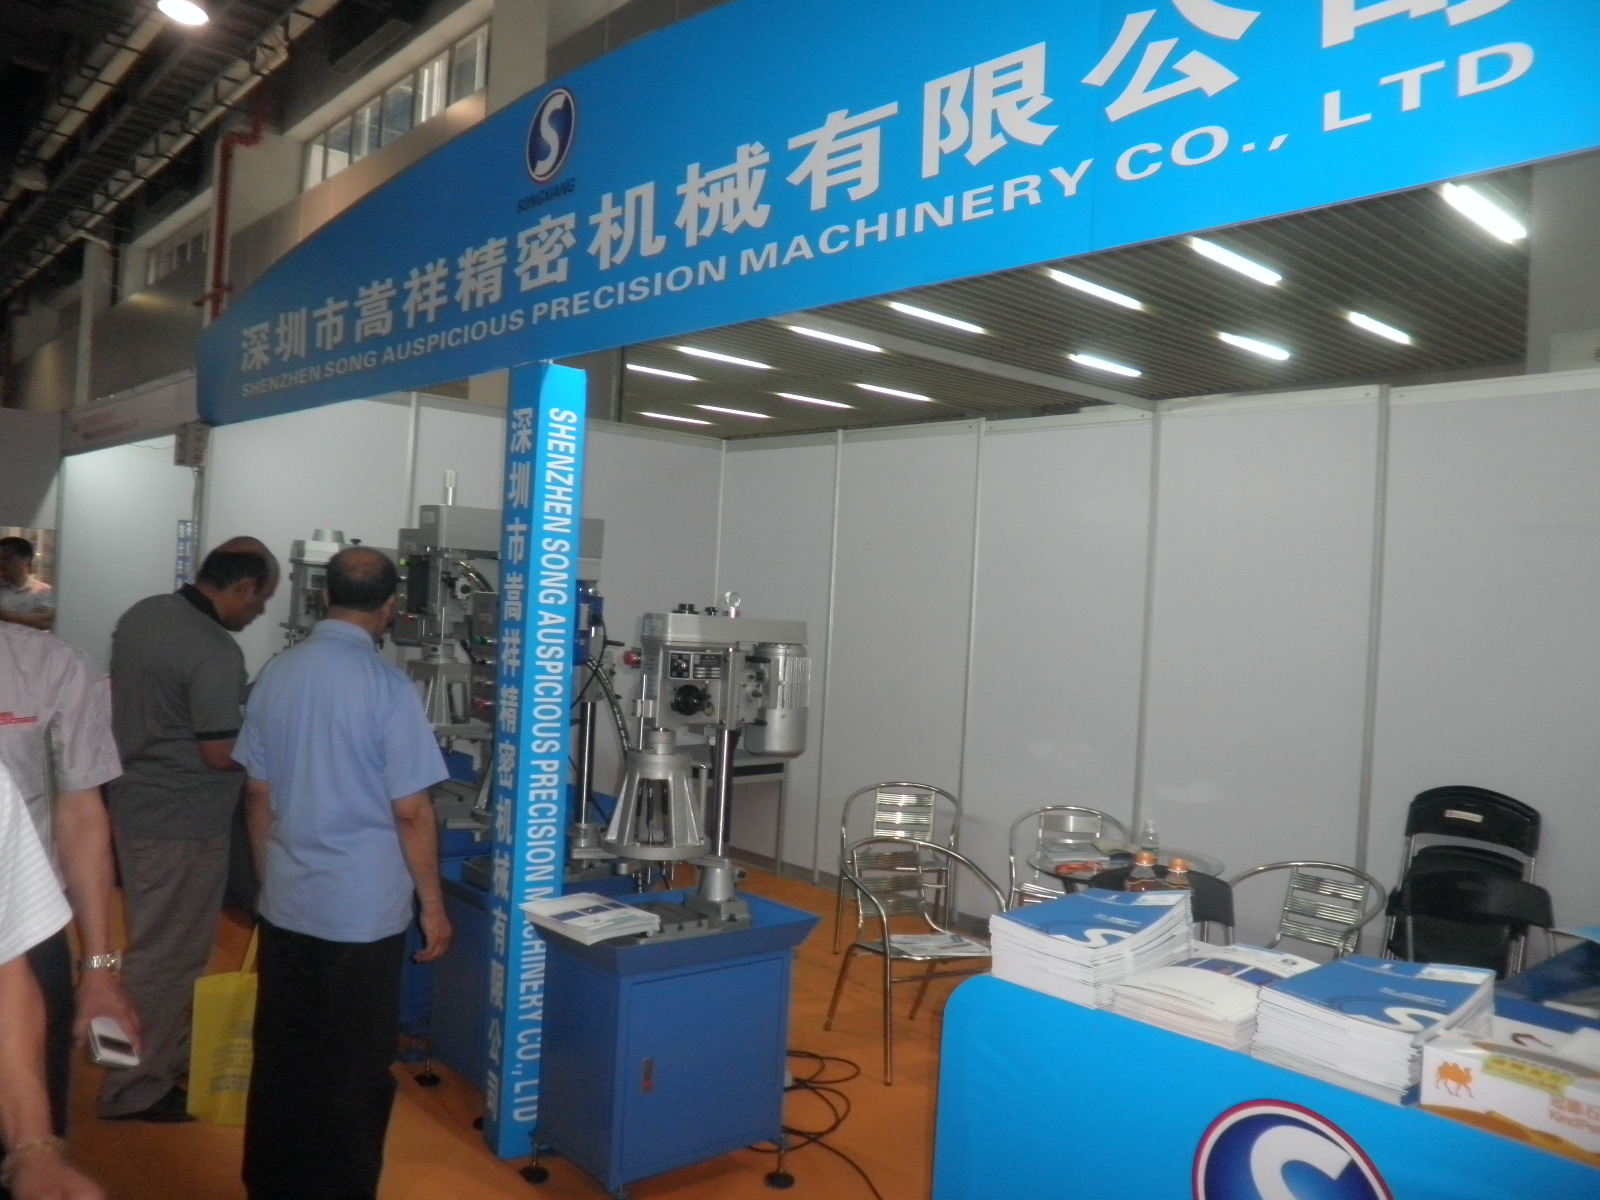 嵩祥公司于2014年6月16日參加廣州國際金屬暨冶金